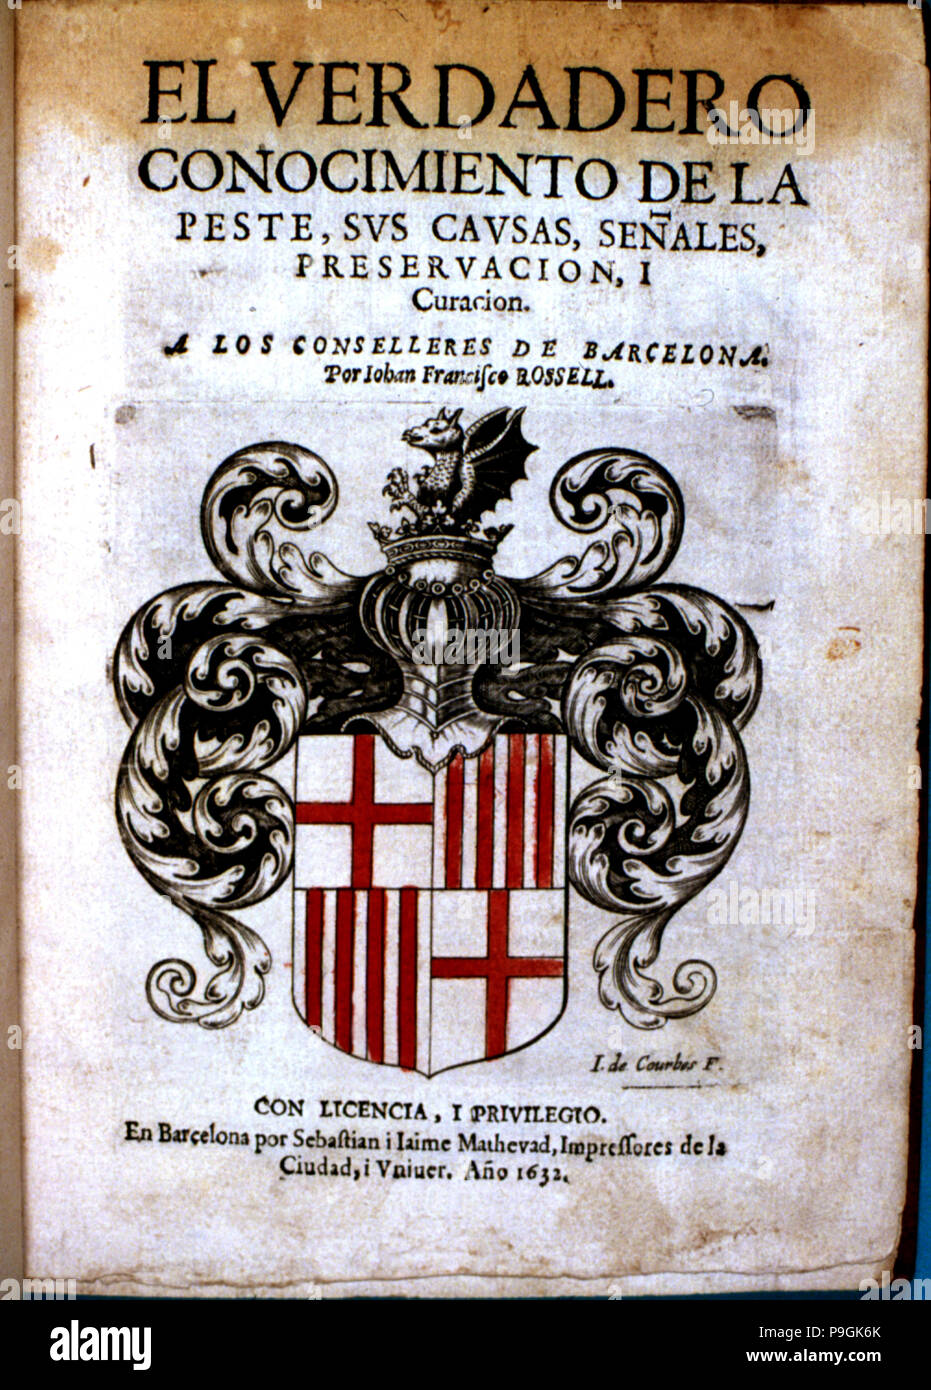 Cover of the book 'El verdadero conocimiento de la peste, sus causas, señales, preservación y cur… Stock Photo